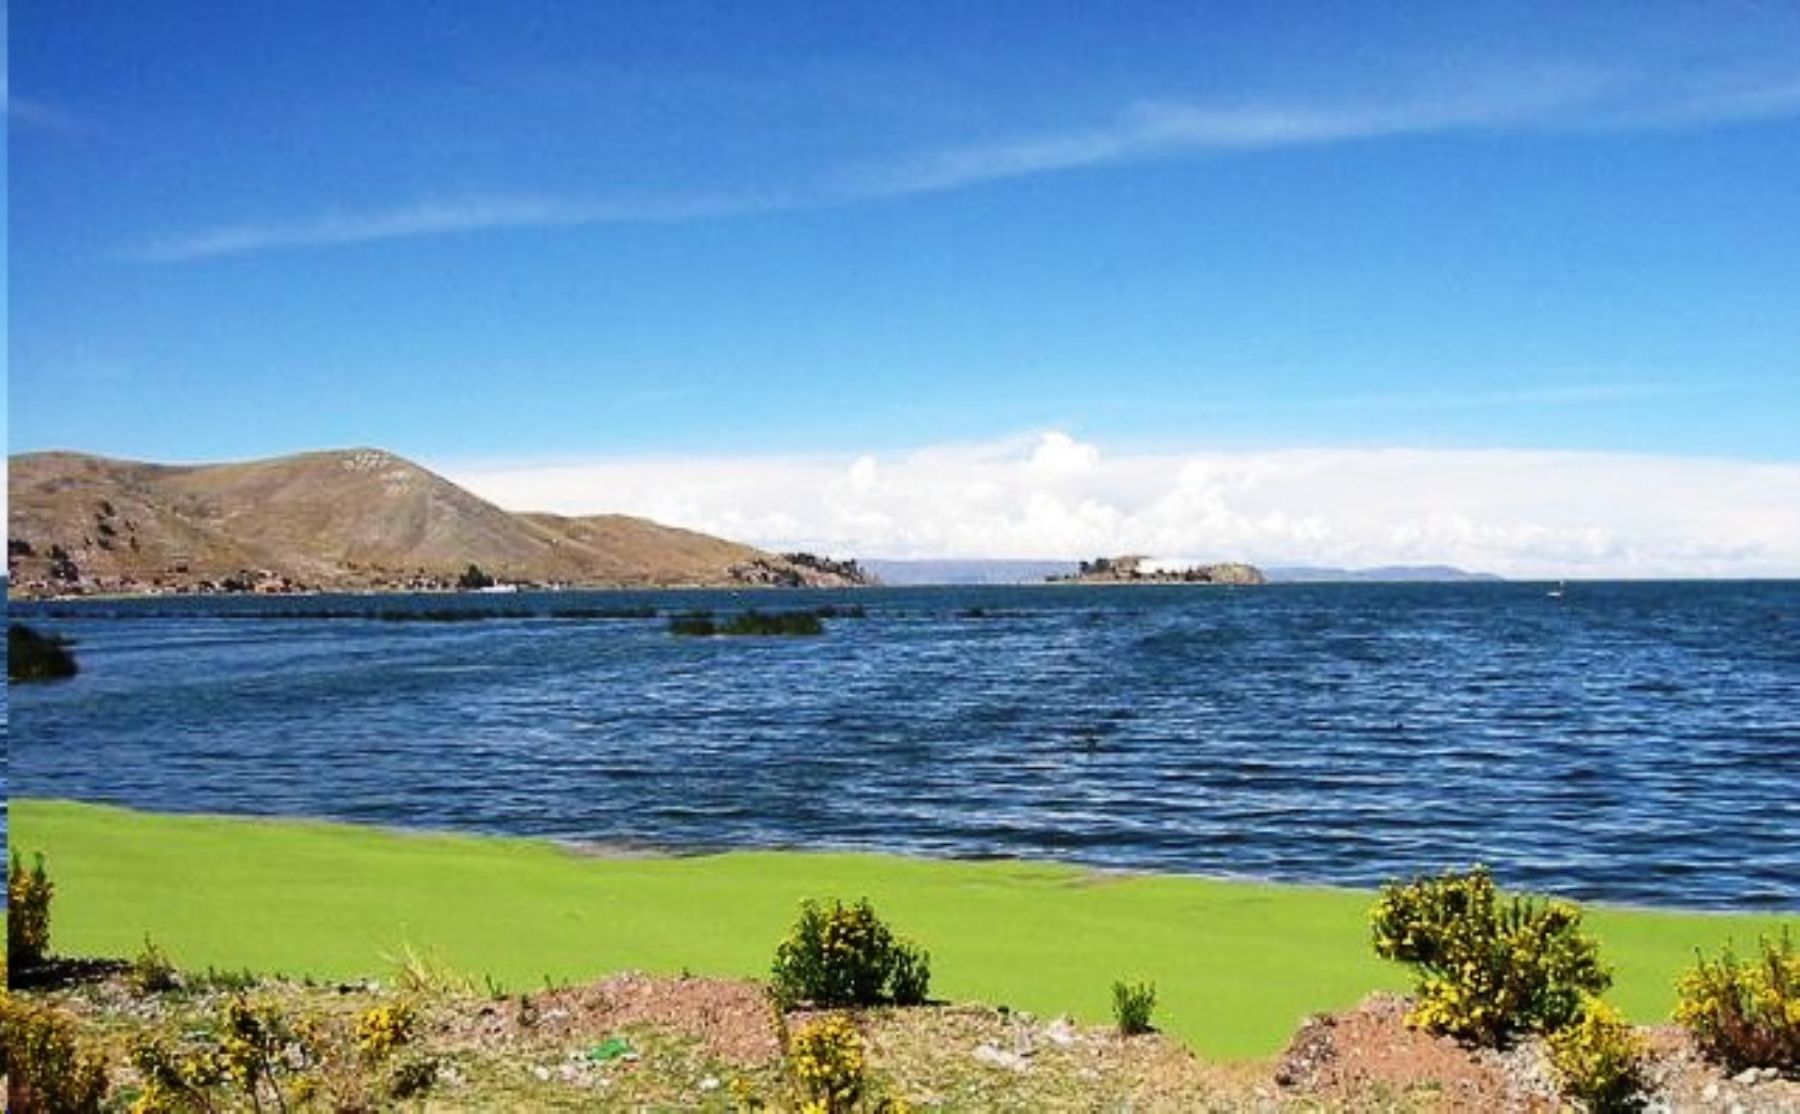 El río Ramis, en la región Puno, se encuentra en Alerta Hidrológica Roja tras registrar un aumento de su caudal en 79% y superar su altura máxima en las últimas horas, debido a las persistentes lluvias que acontecen en el altiplano, informó el Senamhi. ANDINA/Difusión